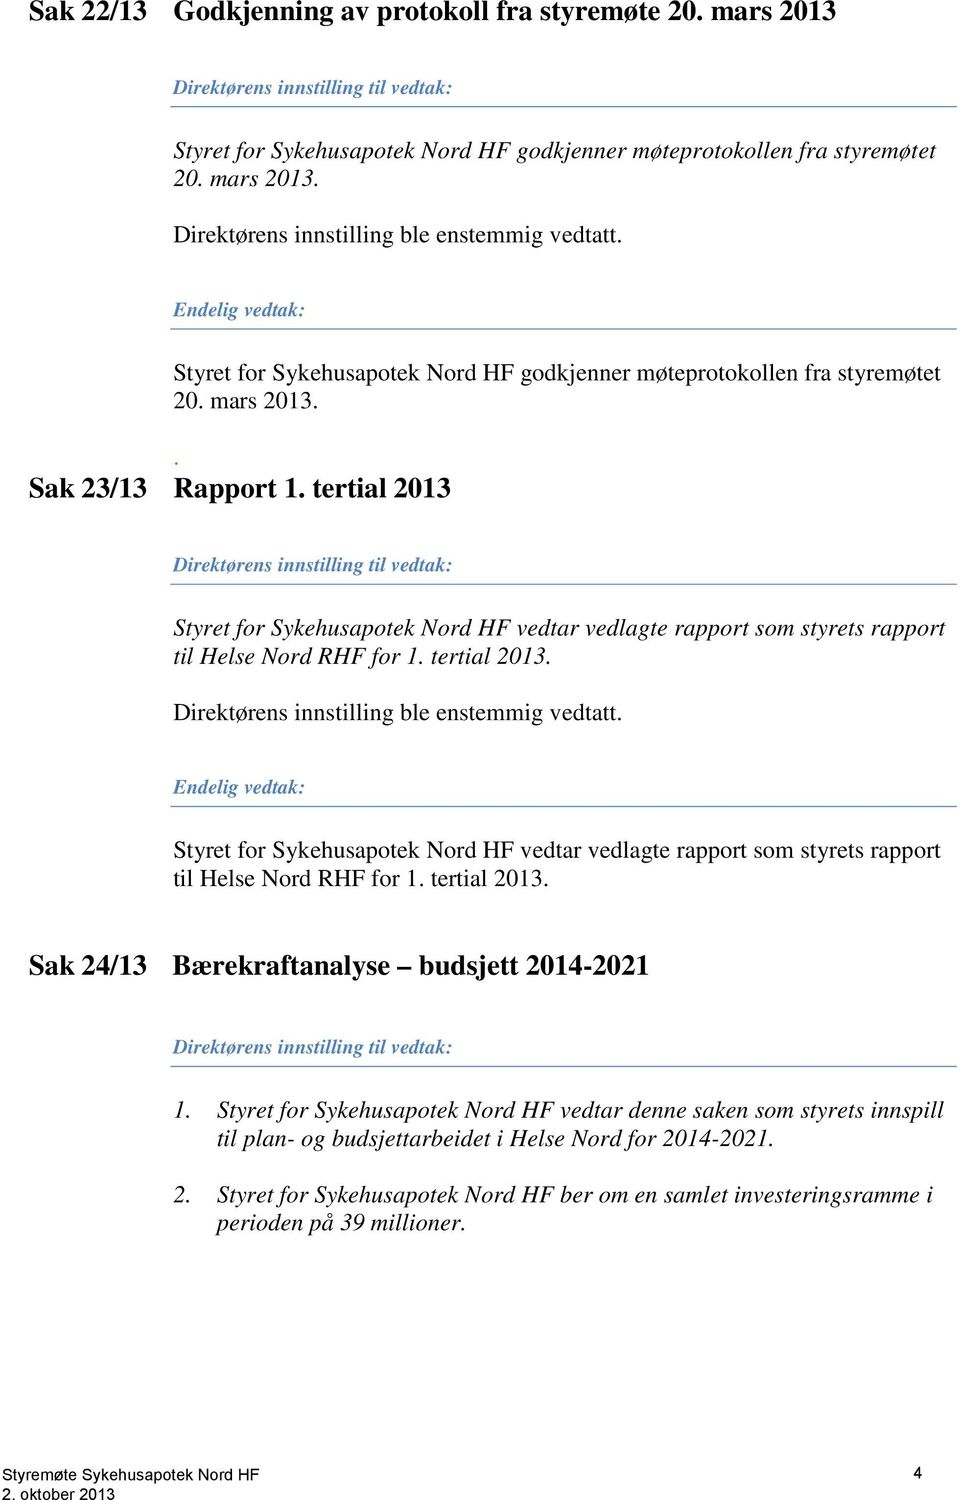 tertial 2013 Direktørens innstilling til vedtak: Styret for Sykehusapotek Nord HF vedtar vedlagte rapport som styrets rapport til Helse Nord RHF for 1. tertial 2013.